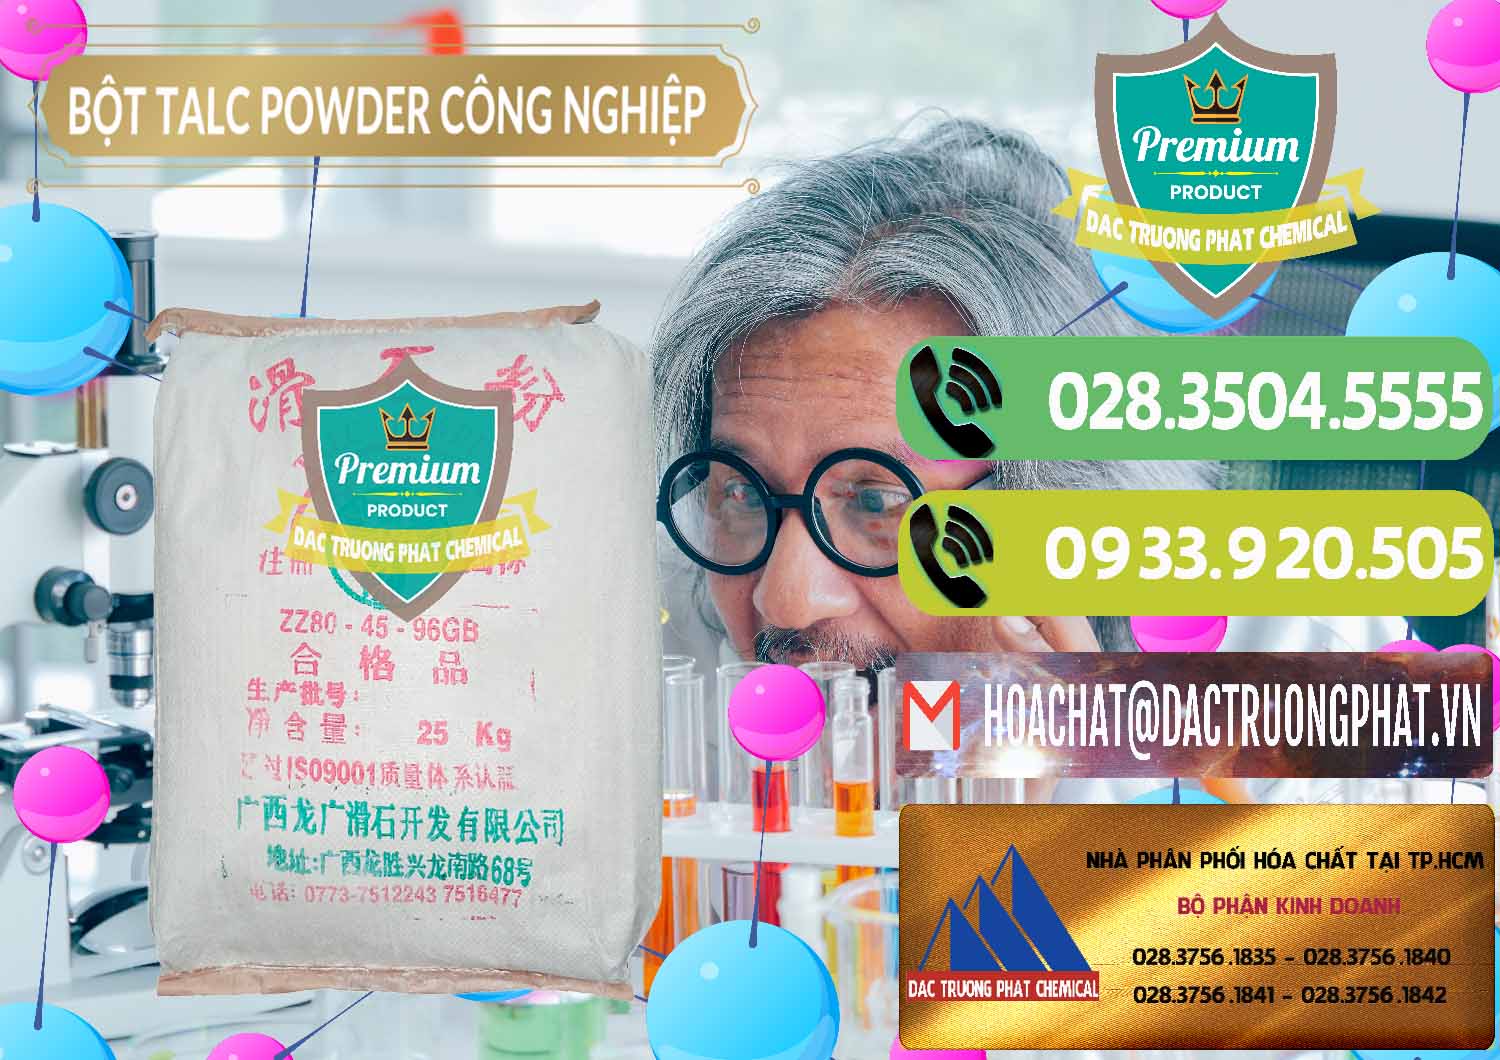 Nơi bán và cung ứng Bột Talc Powder Công Nghiệp Trung Quốc China - 0037 - Nhà phân phối và cung cấp hóa chất tại TP.HCM - hoachatmientay.vn